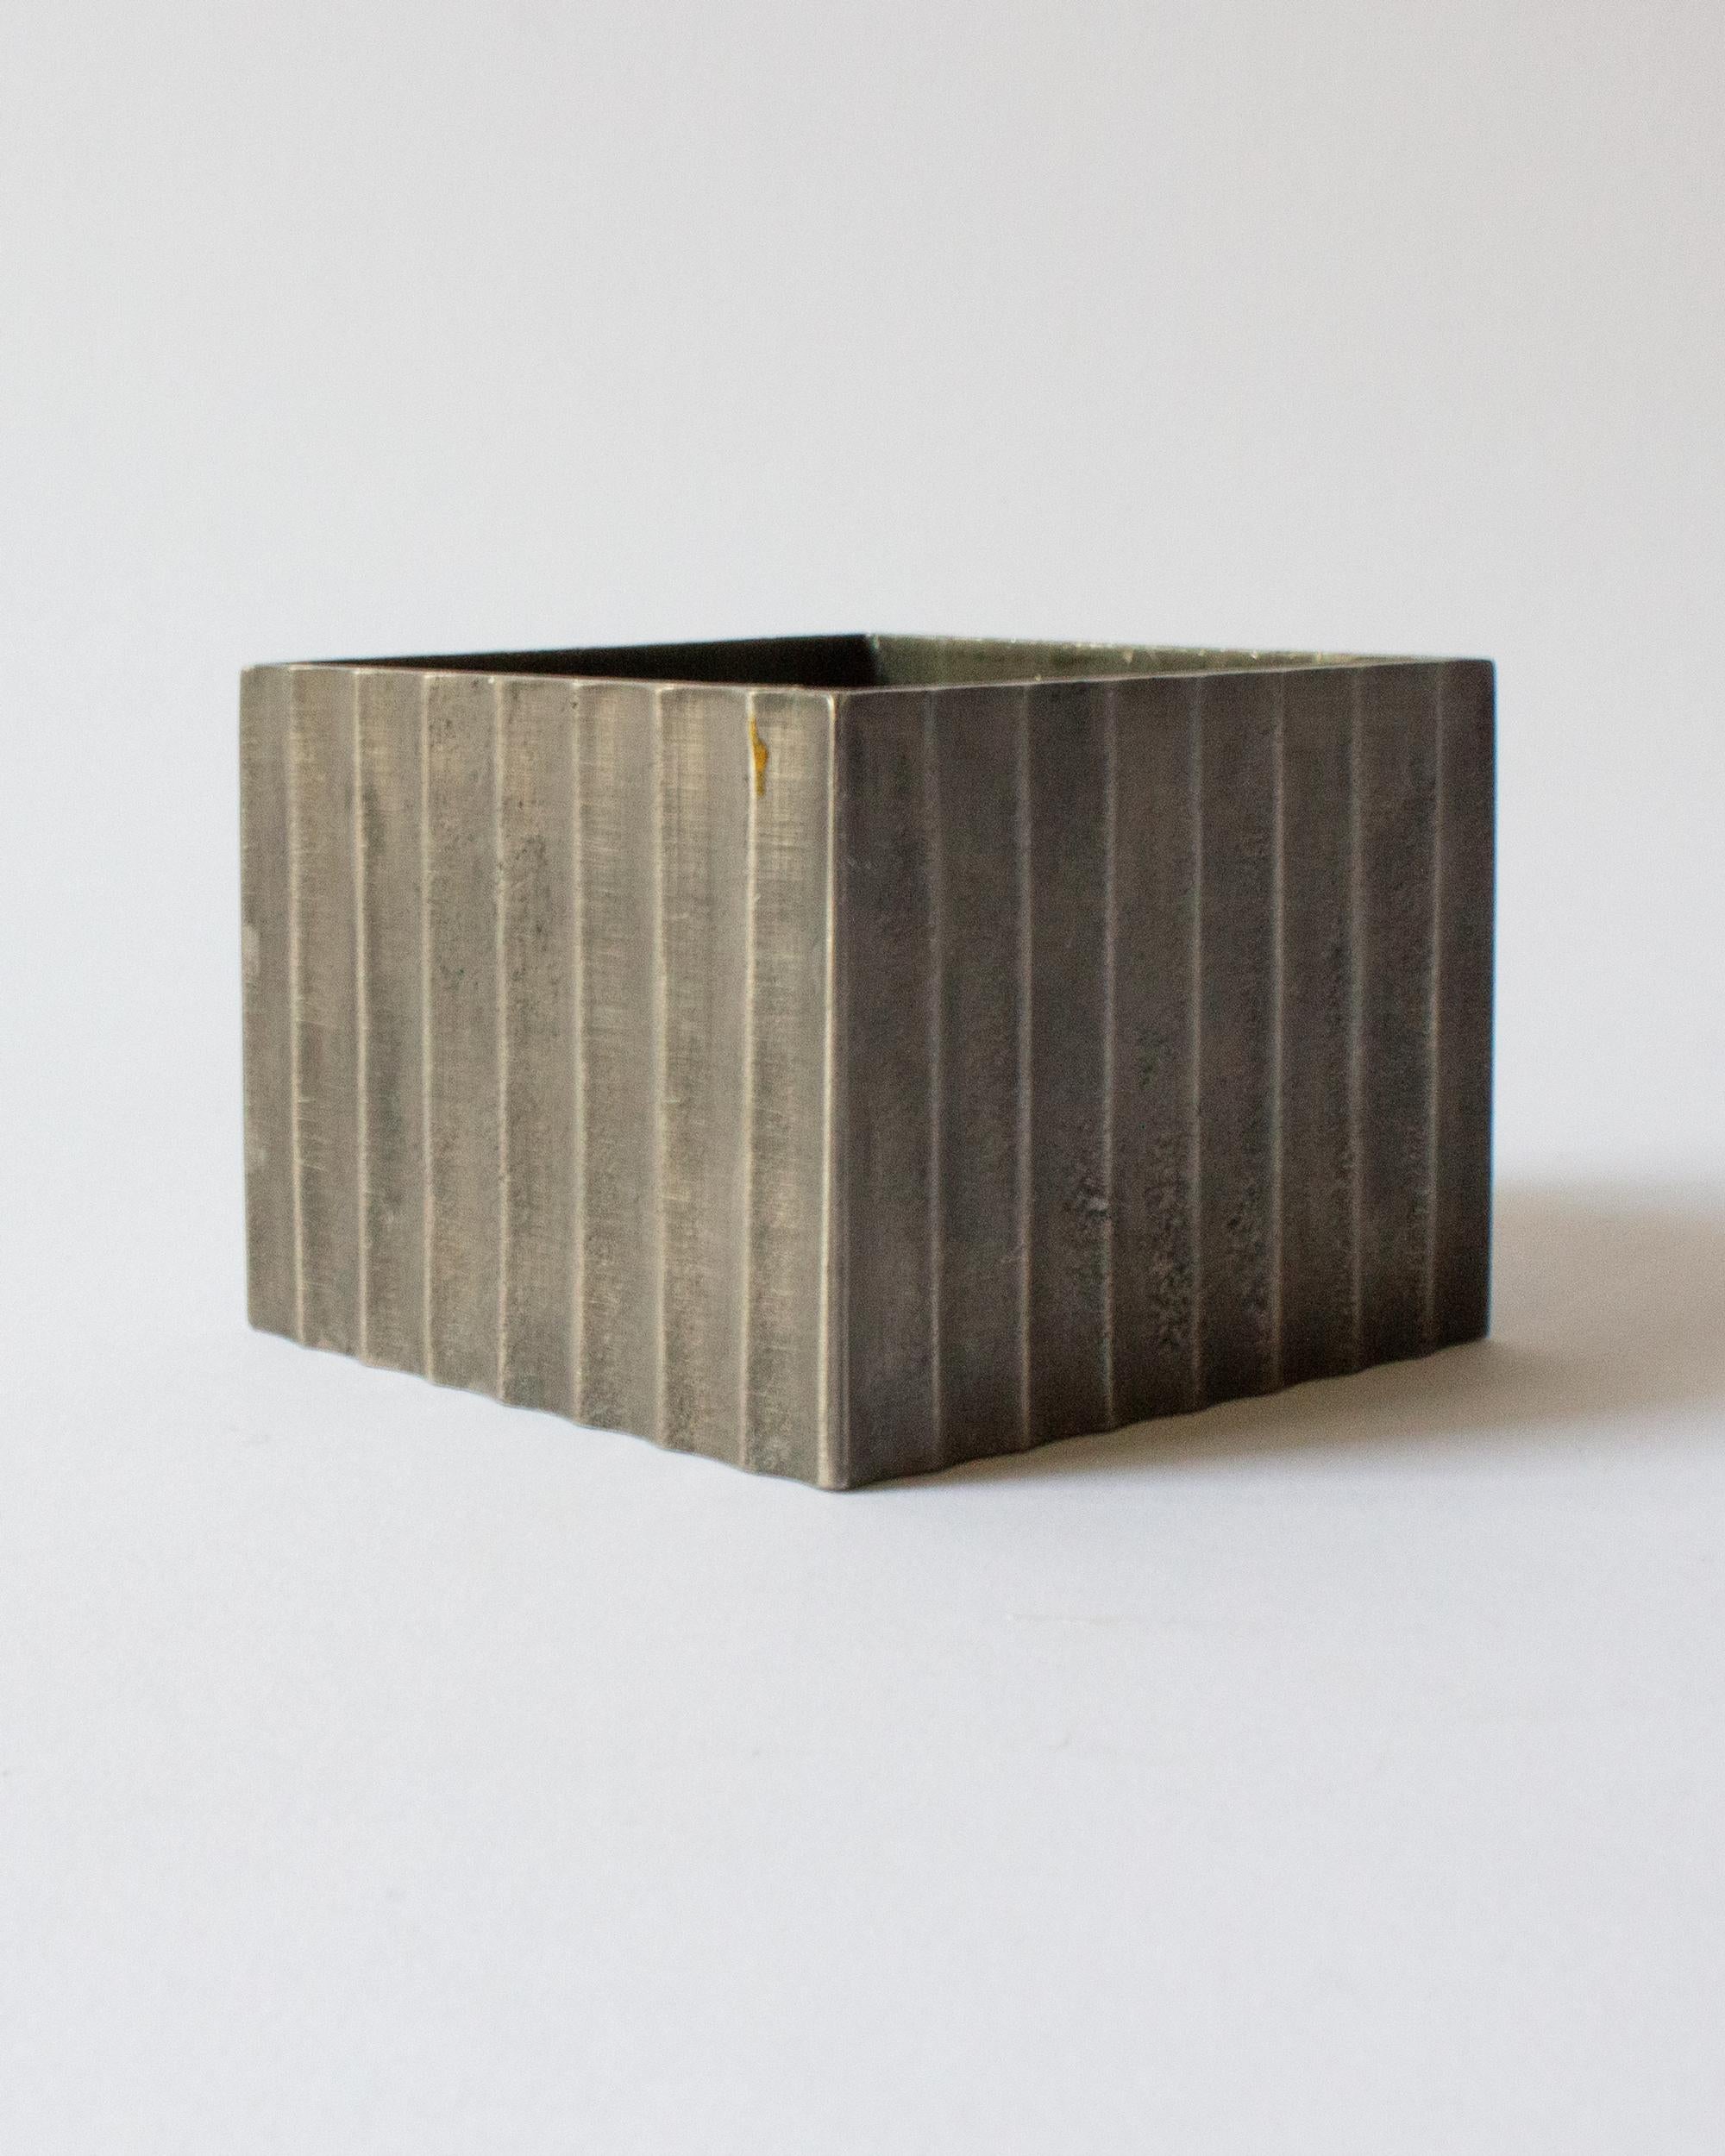 Scandinavian Modern Swedish Grace Pewter Box by Ingvar Bossler for Gamleby Tenn, Västervik, Sweden. For Sale